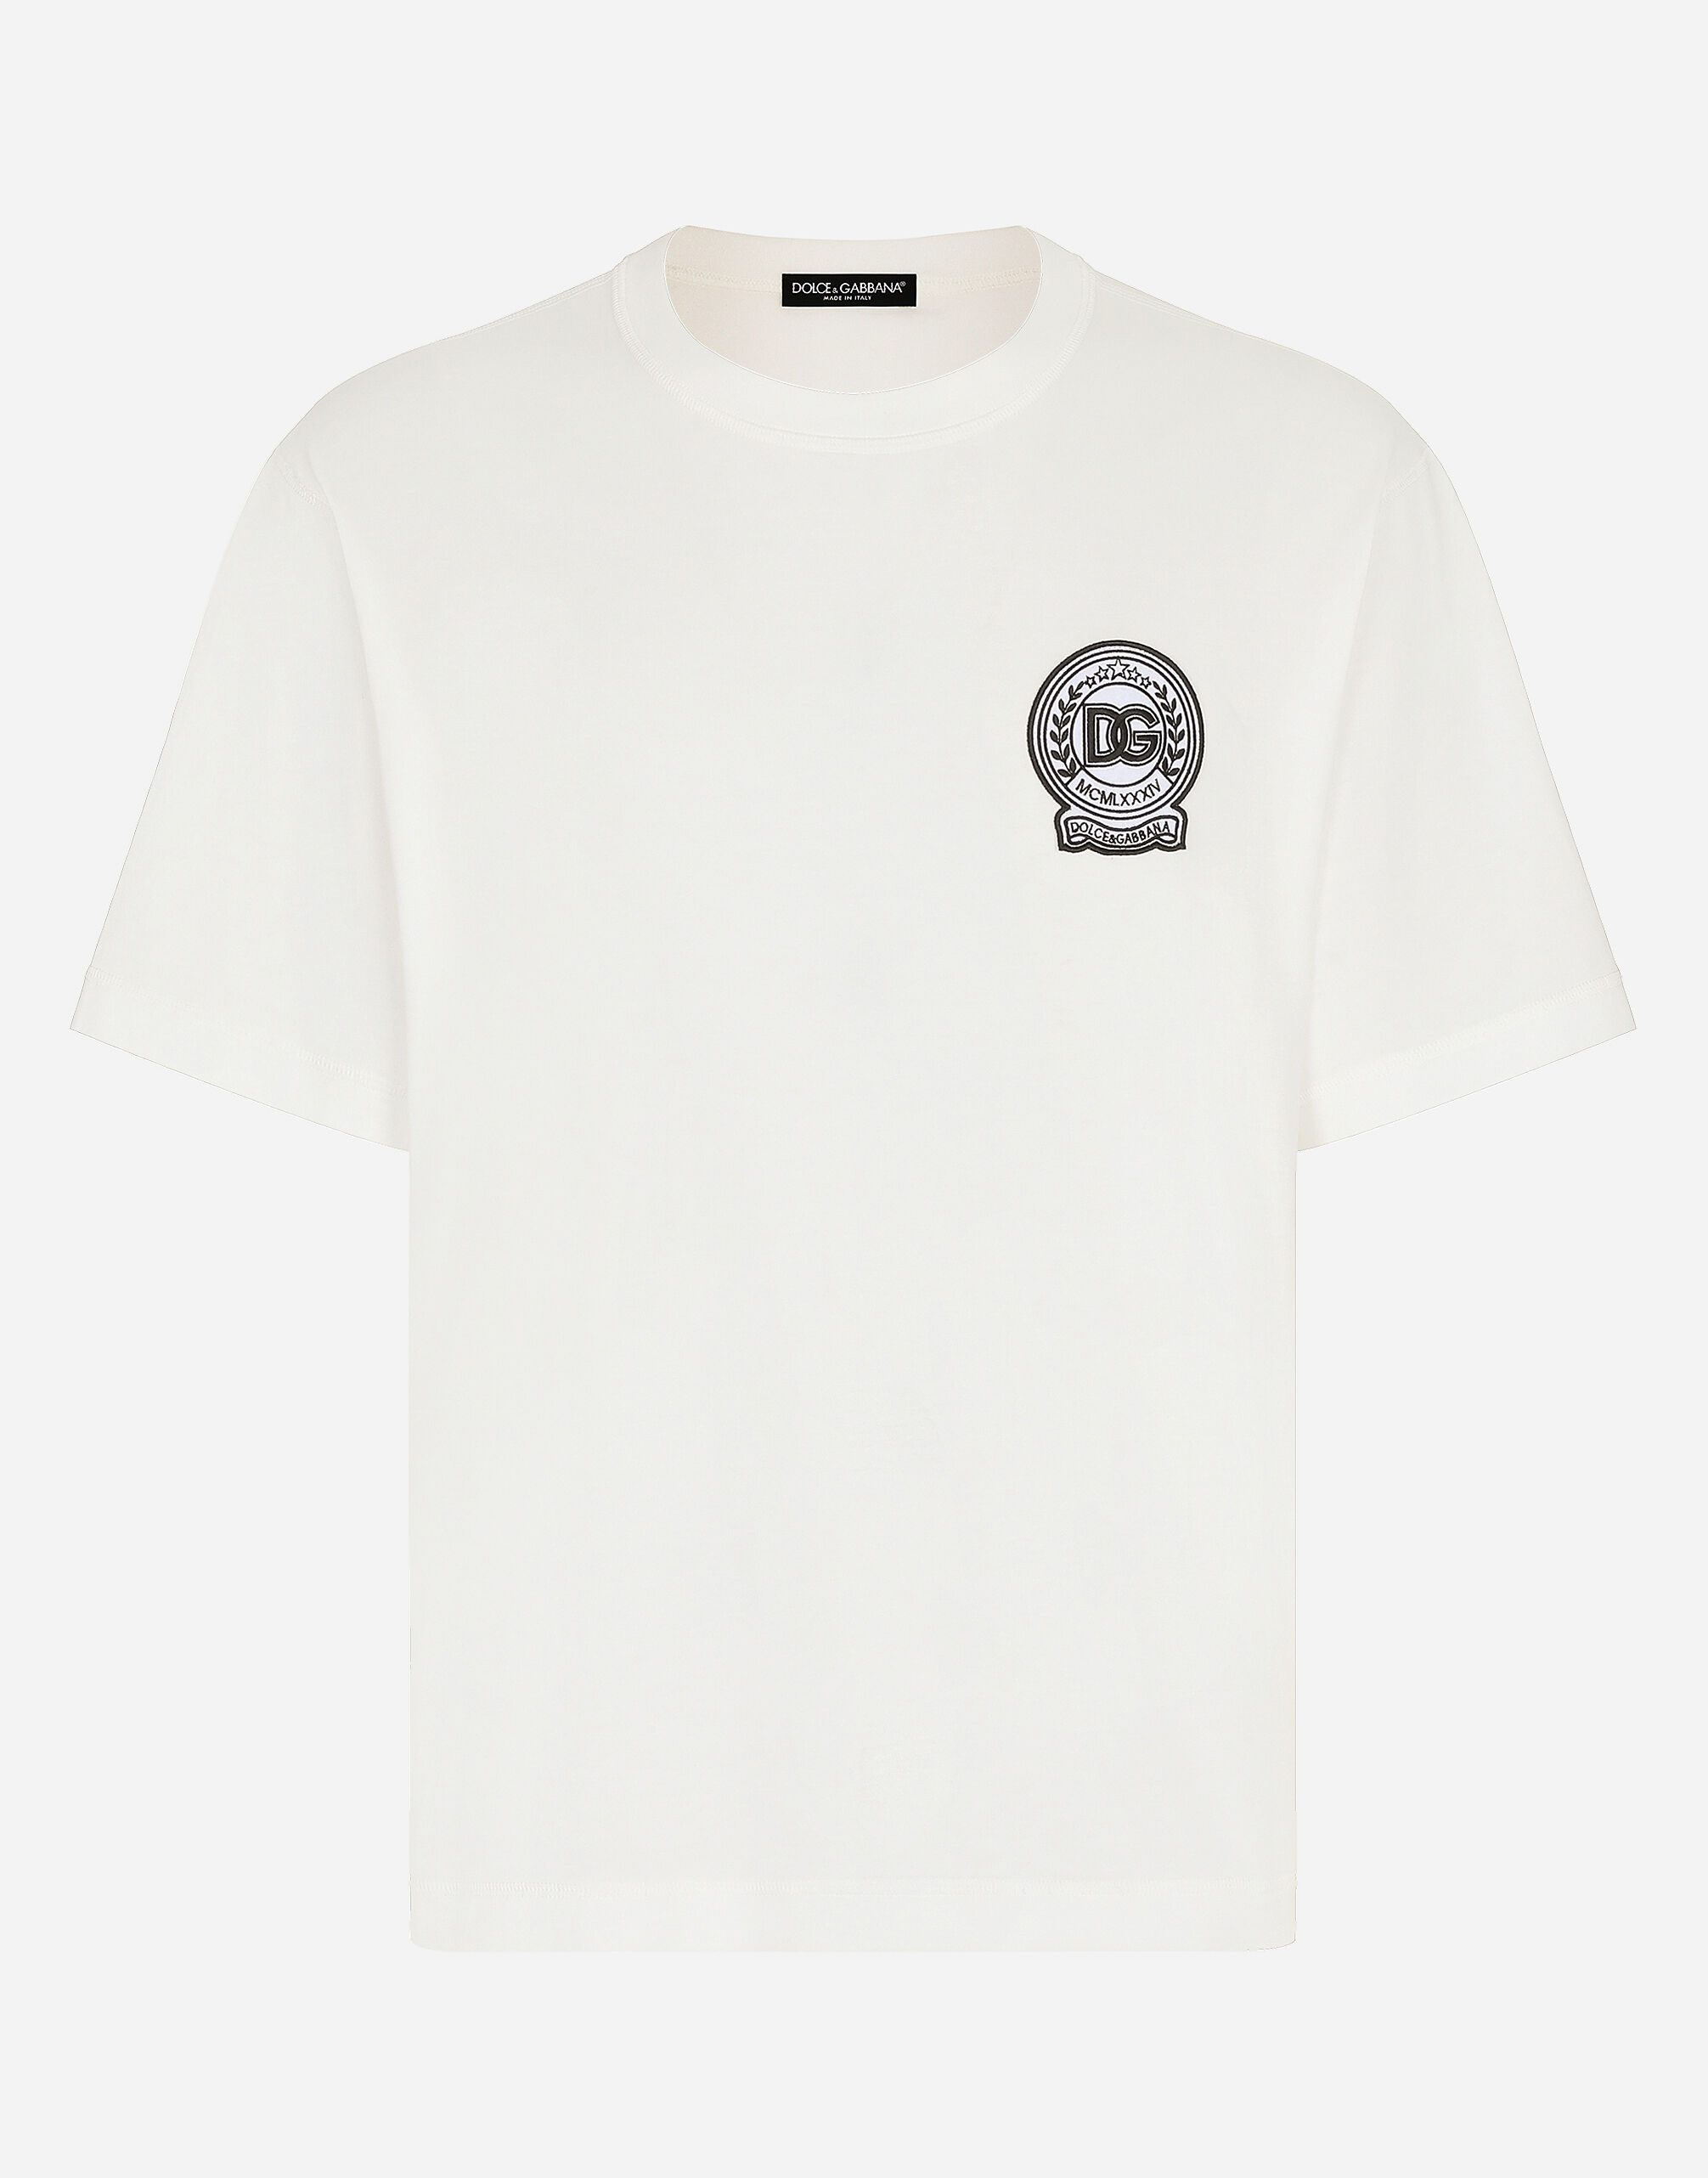 Dolce & Gabbana T-shirt in cotone con ricamo logo stampato Multicolore G8PN9TG7NPZ